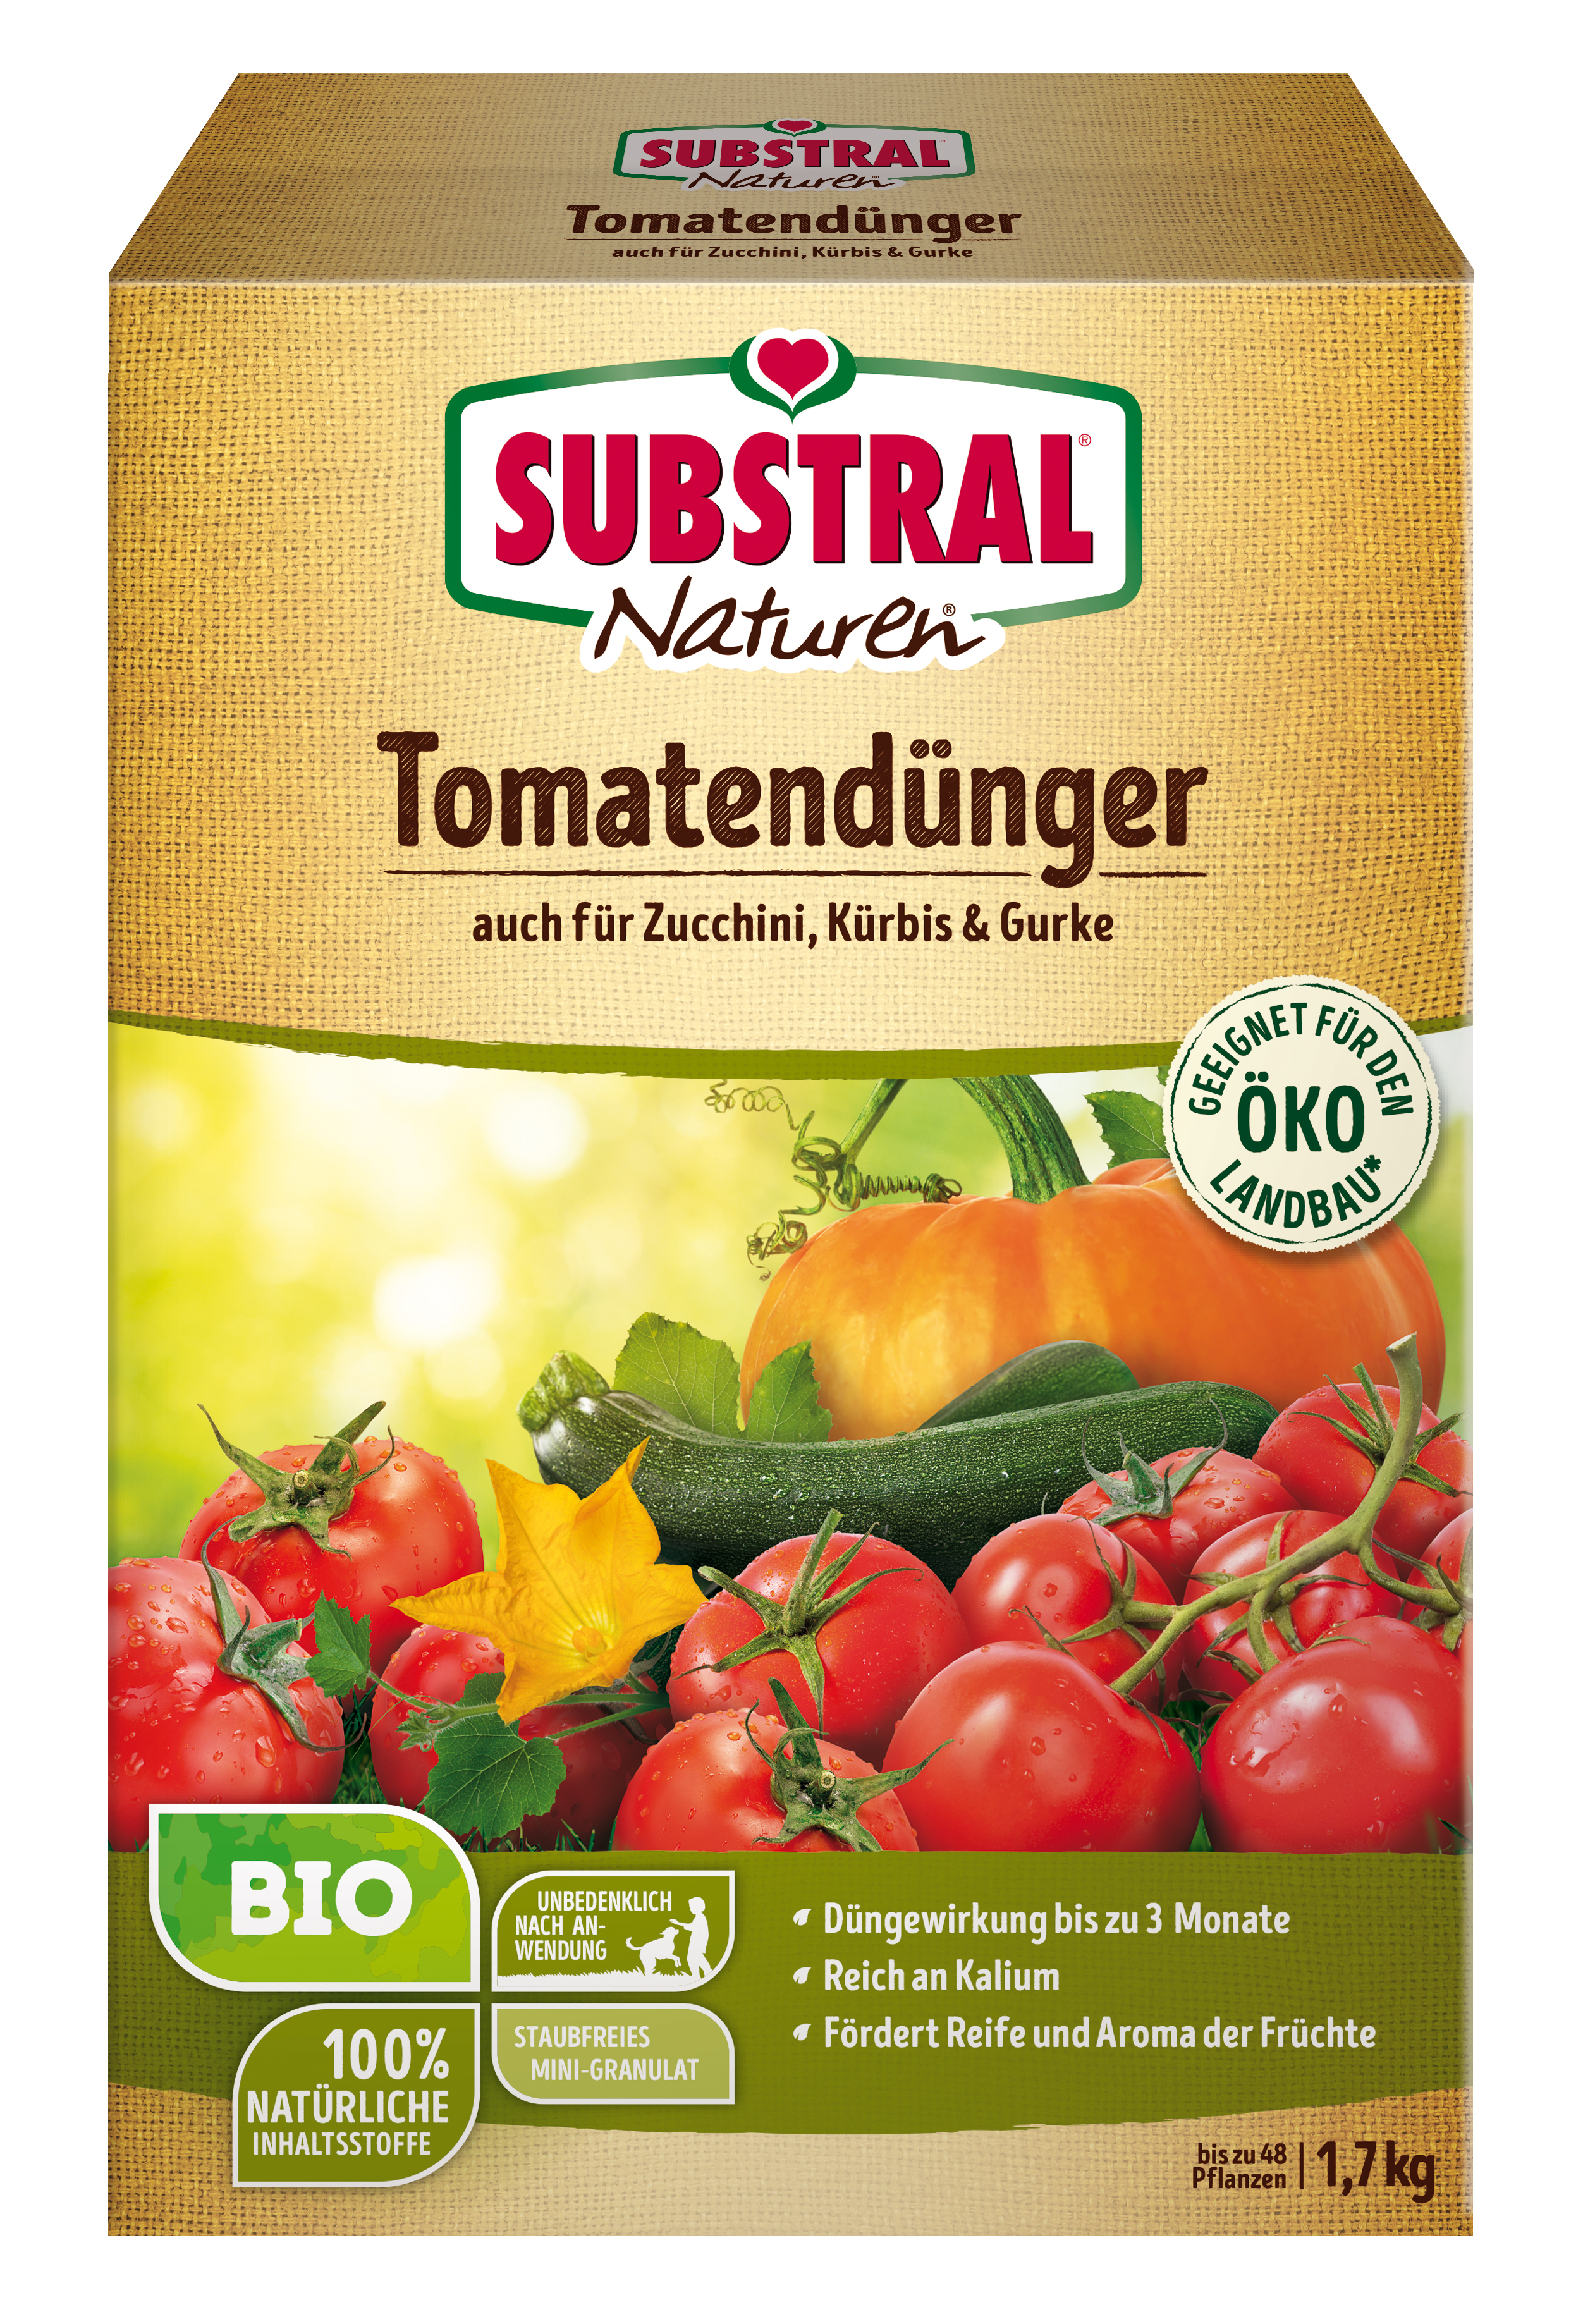 CELAFLOR Substral Naturen Tomatendünger 1,7kg Celaflor